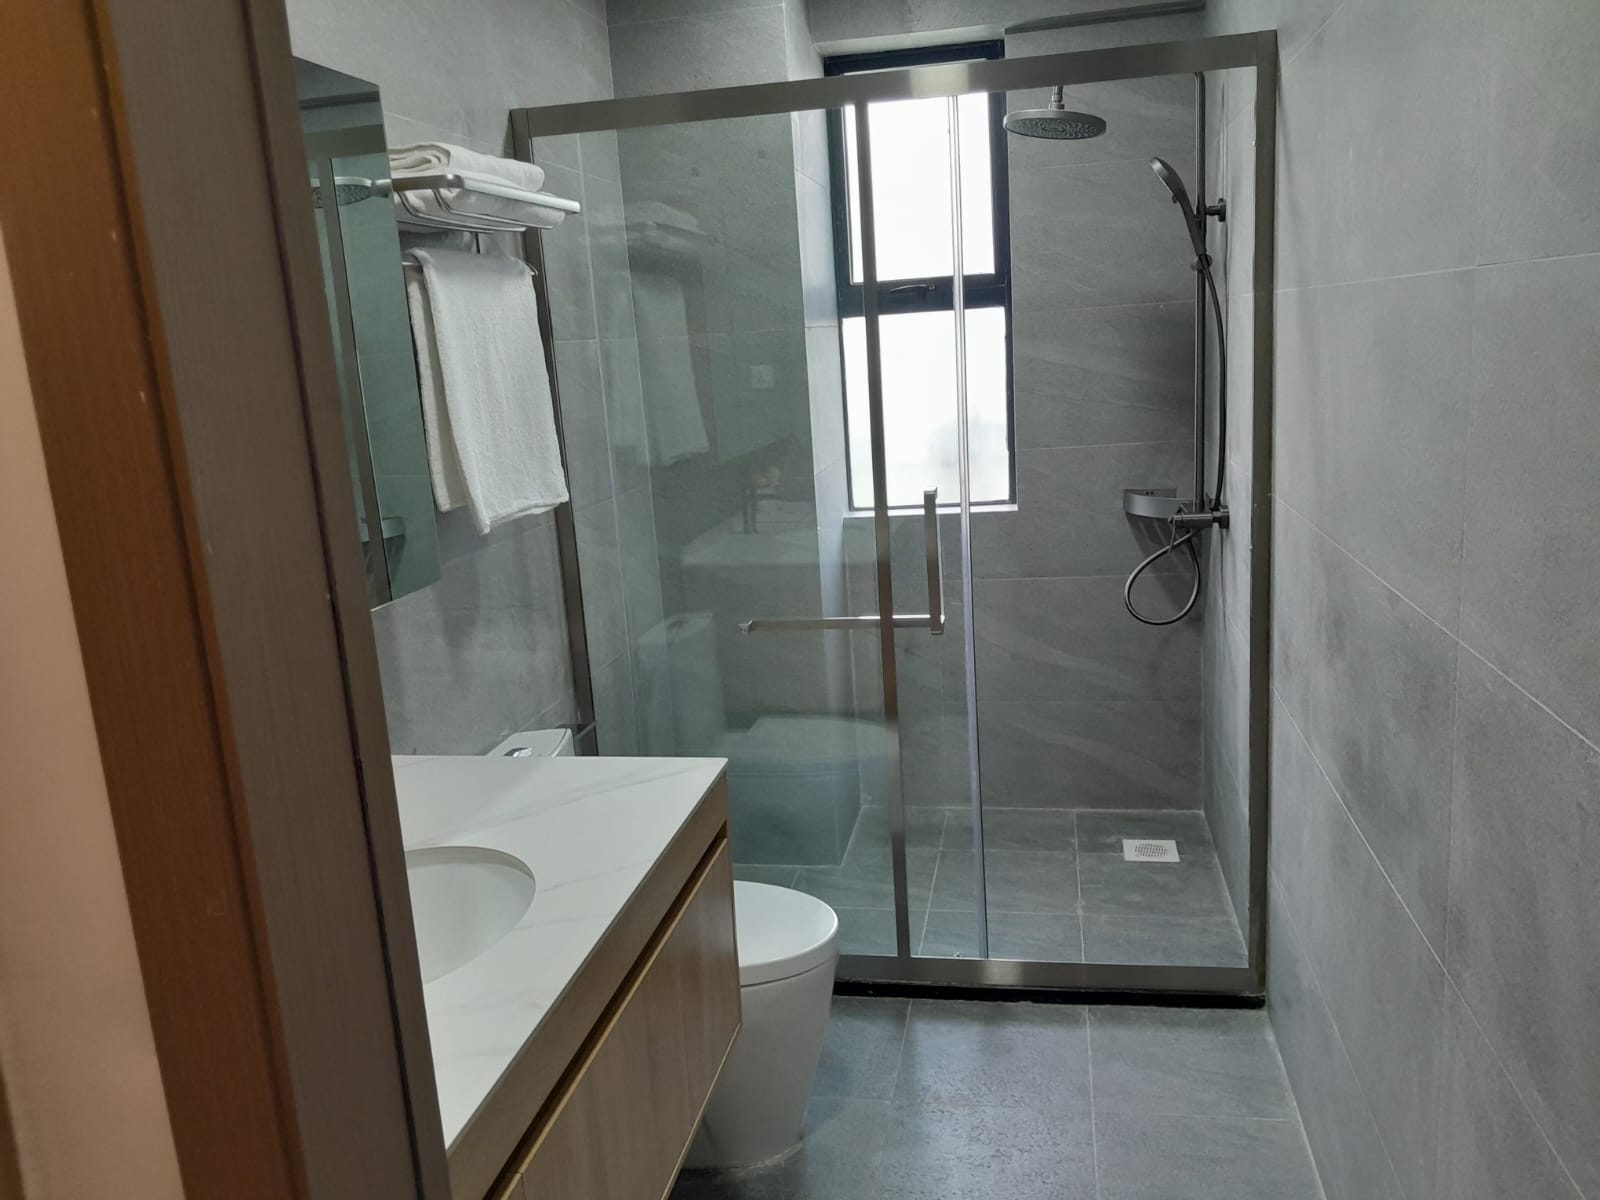 himalaya-heights-apartments-washroom